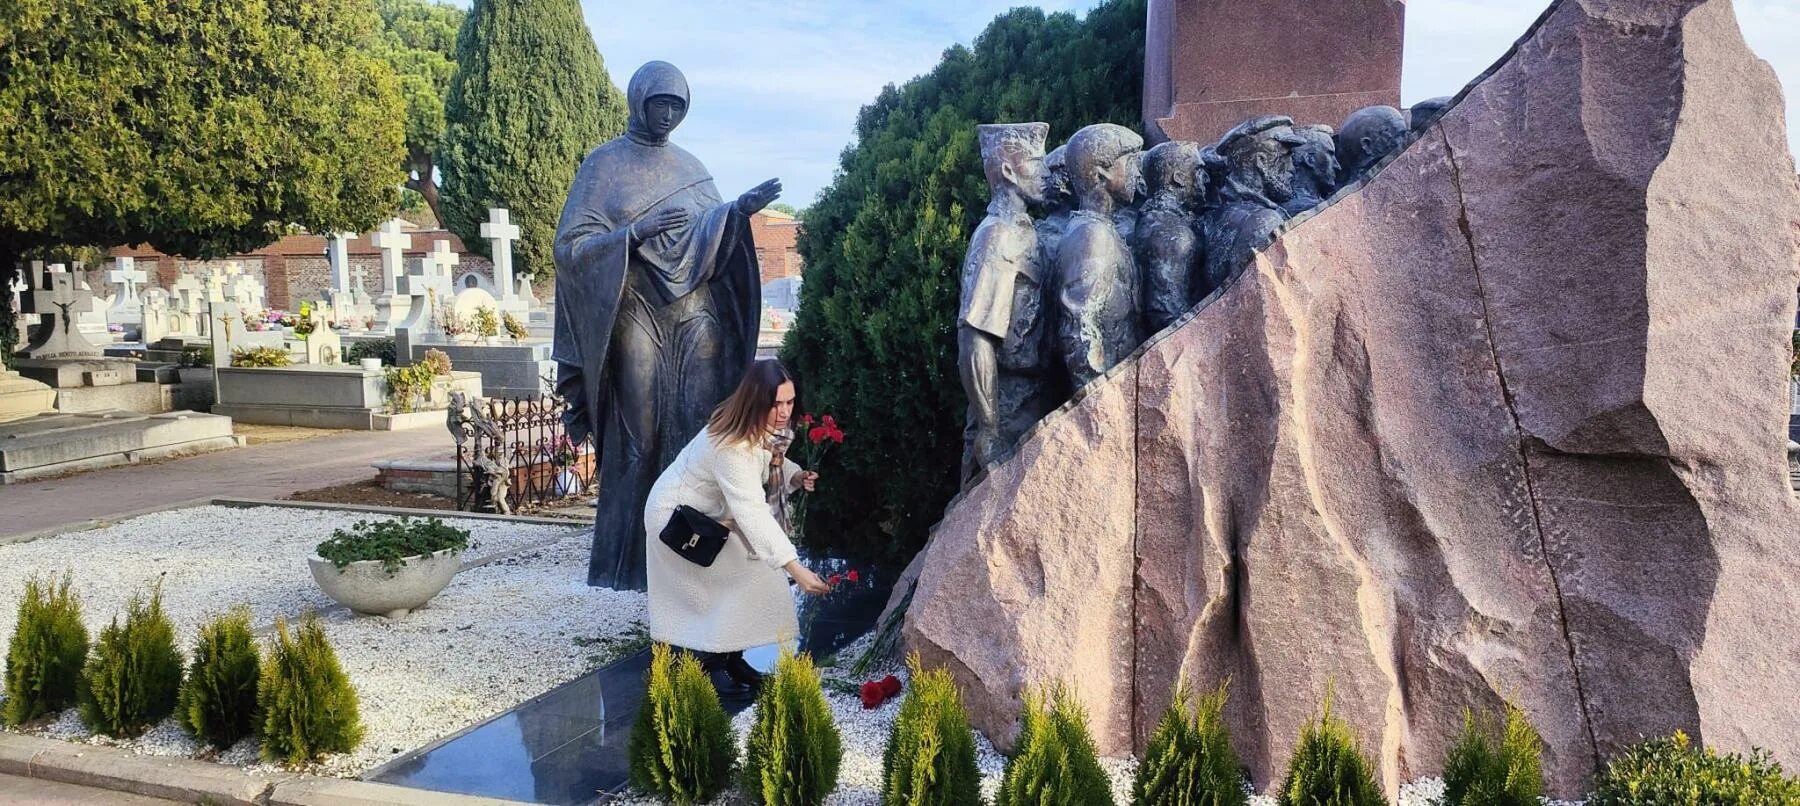 Памятник волонтерам. Памятник в Мадриде погибшим советским добровольцам.